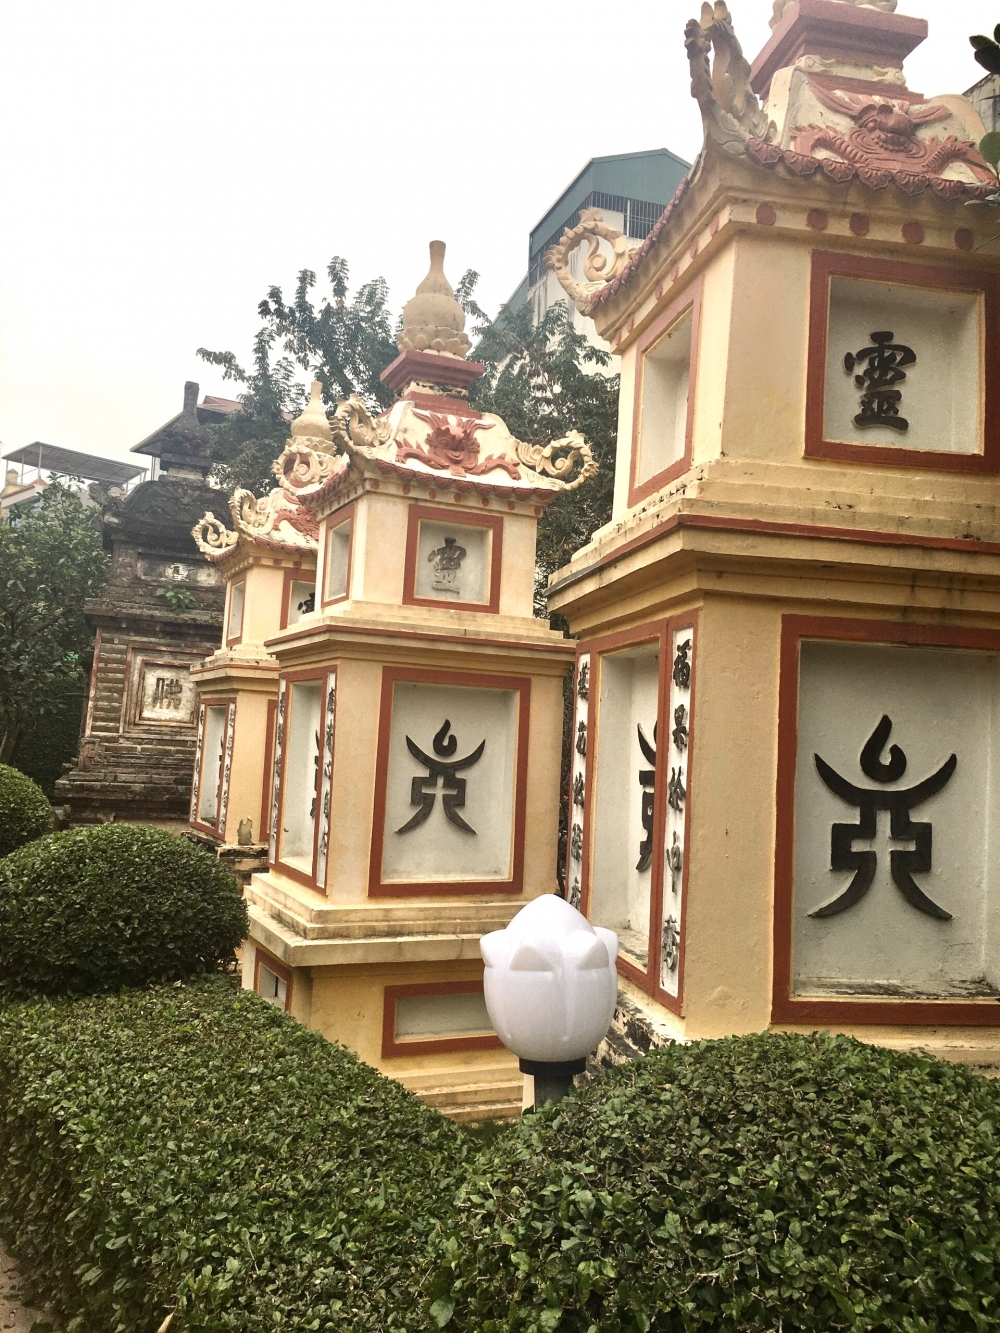 Khám phá ngôi chùa có khuôn viên tuyệt đẹp giữa lòng Hà Nội